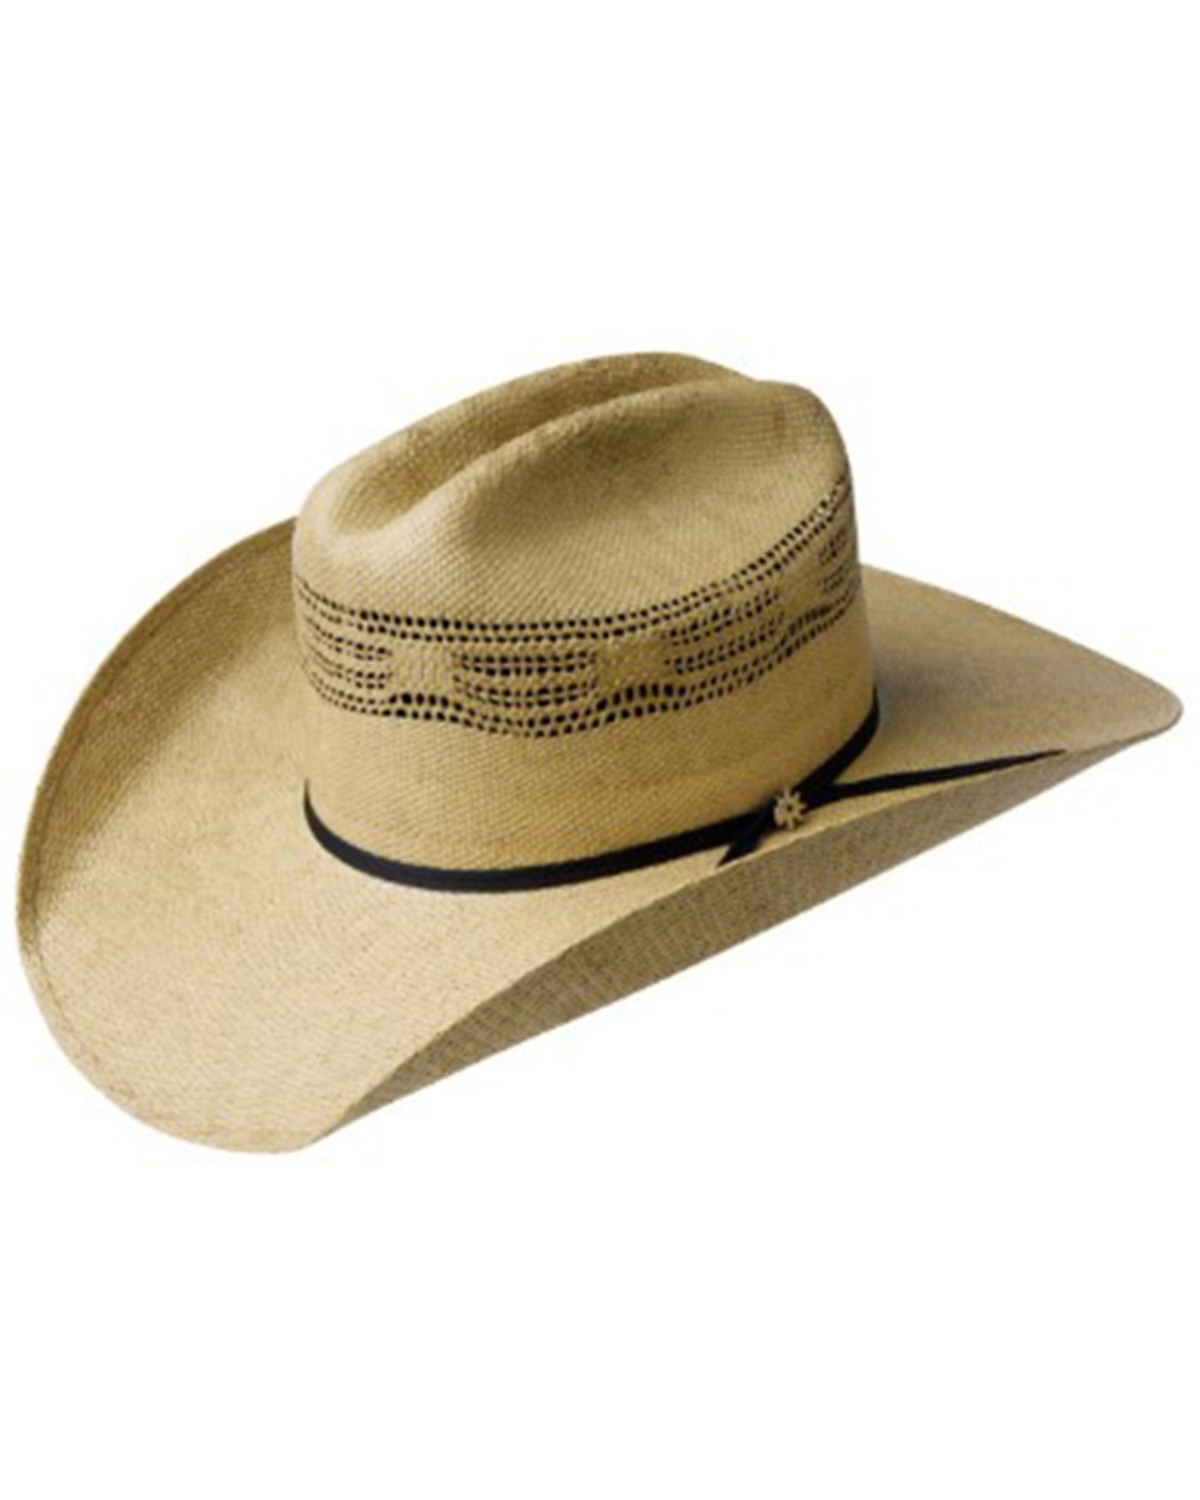 Bailey Costa Straw Cowboy Hat